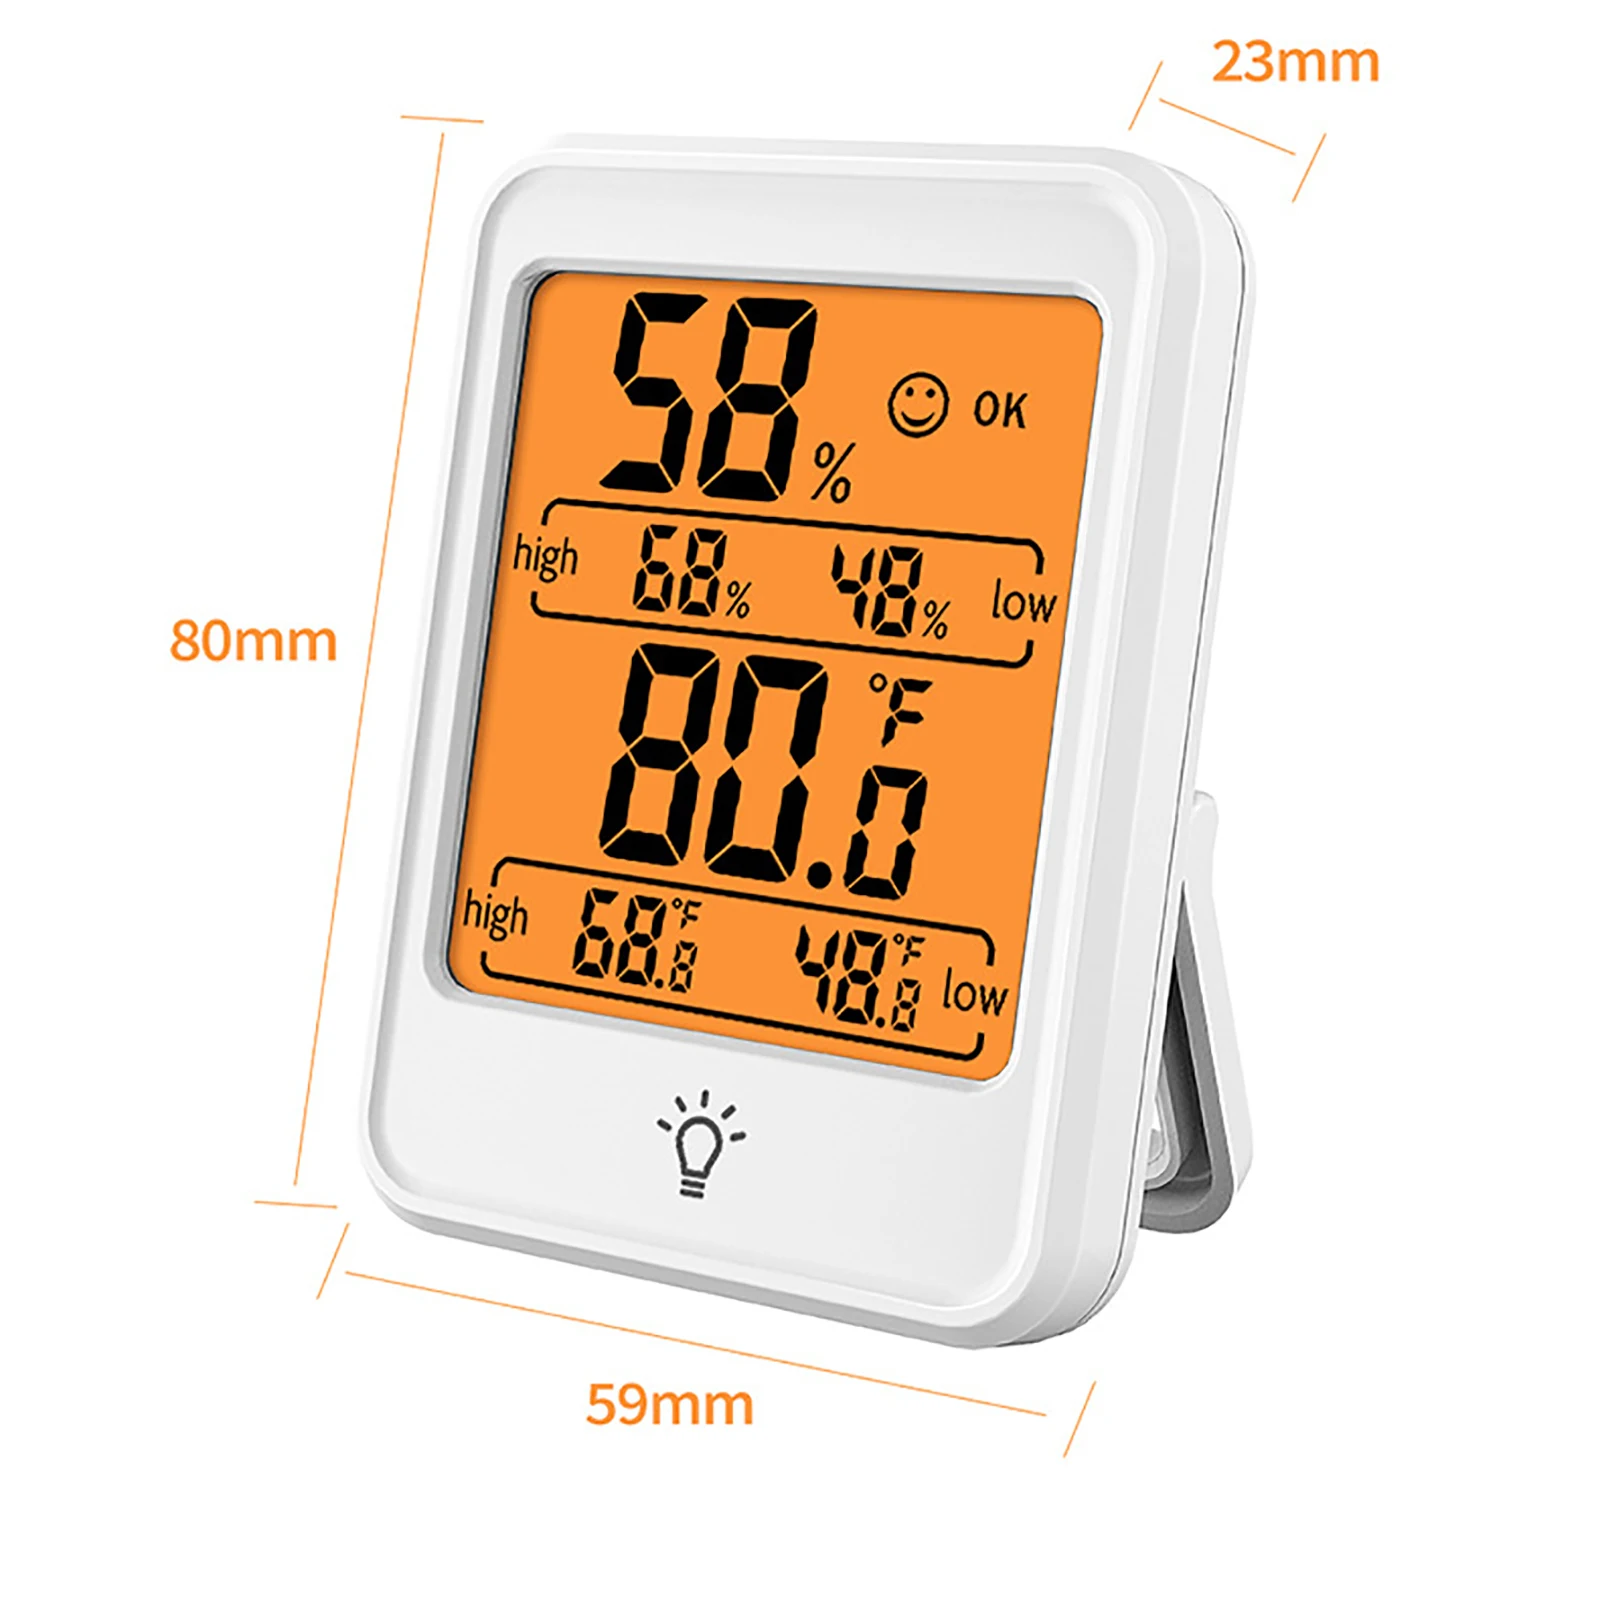 1шт Внутренний Термометр Цифровой Гигрометр Комнатный Термометр Монитор Влажности С Подсветкой, Термометр для Комнатной Температуры4